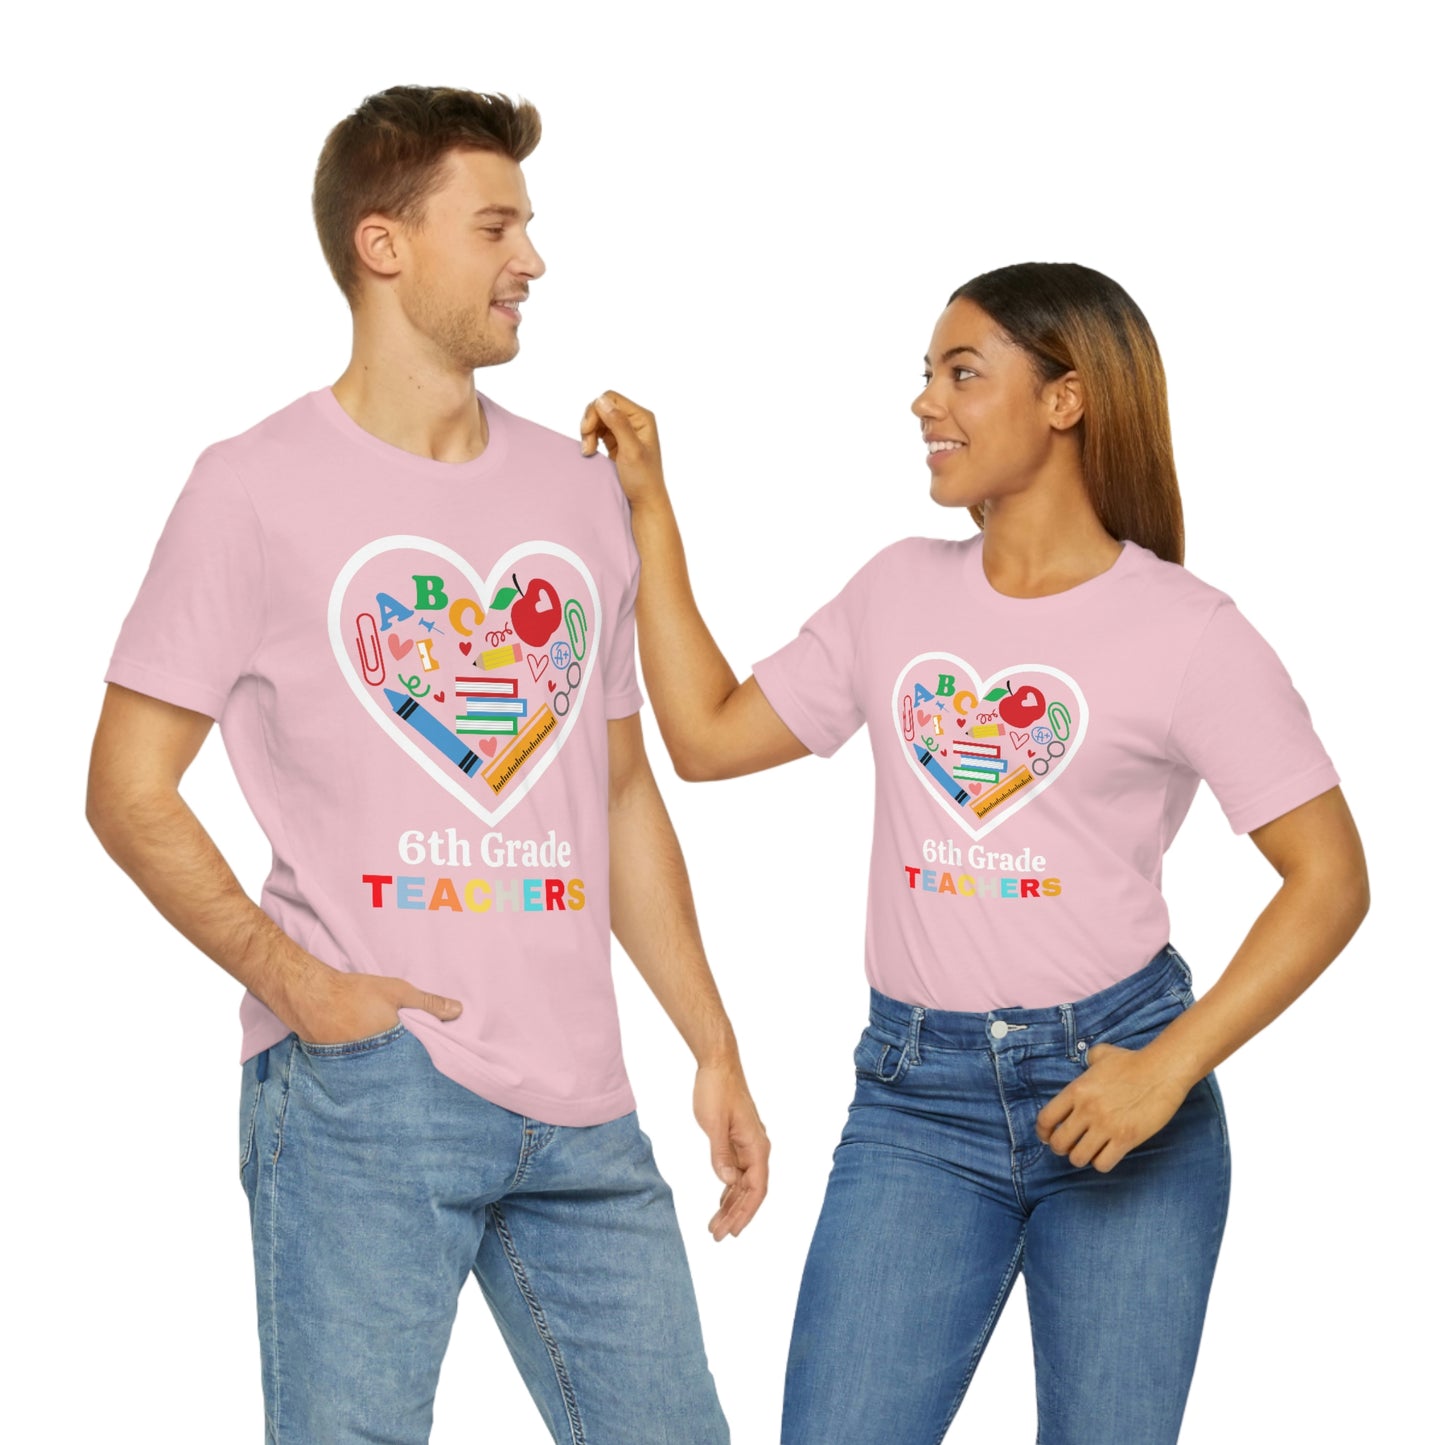 Love 6th Grade Teacher Shirt - Teacher Appreciation Shirt - Gift for Teachers - 6th Grade shirt